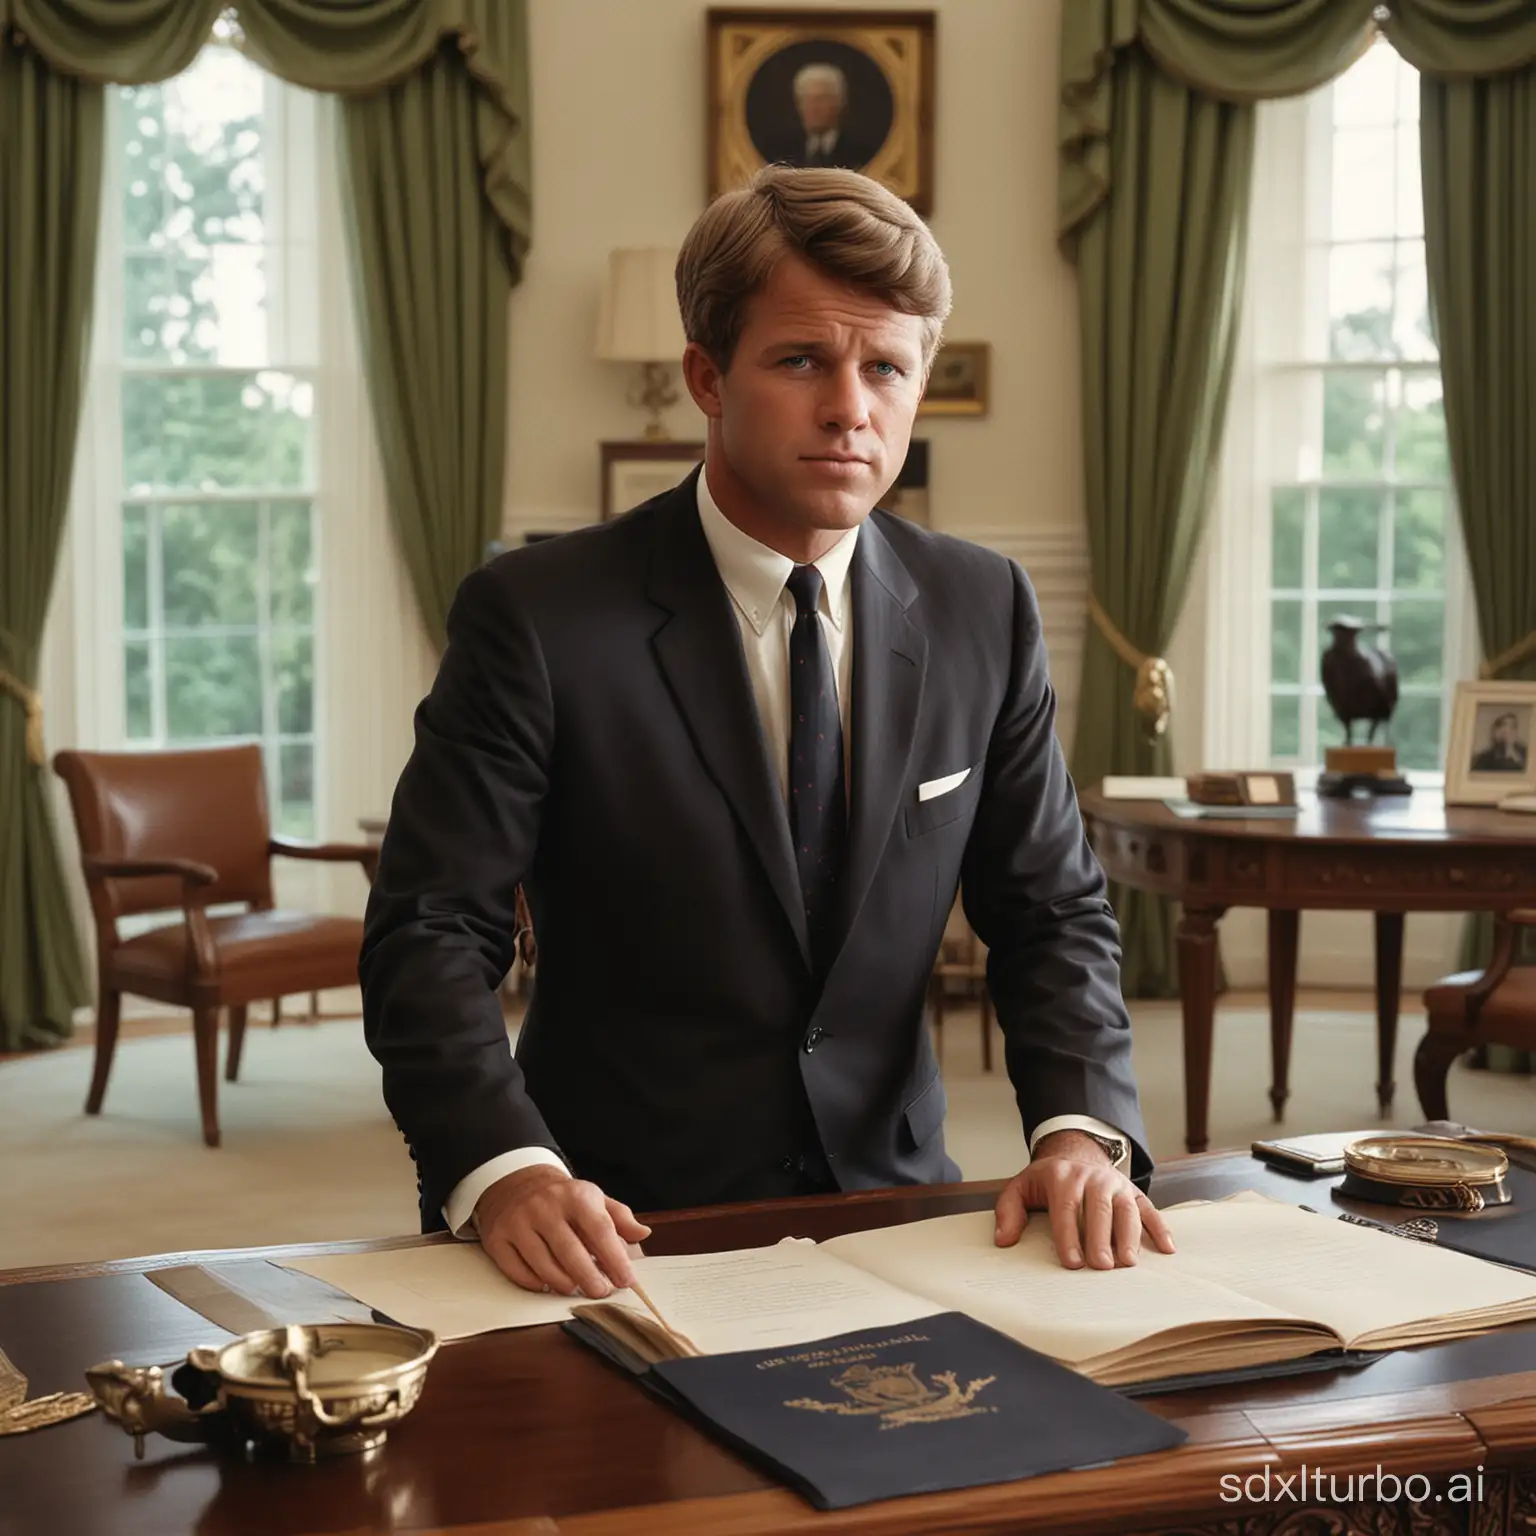 Robert-F-Kennedy-Junior-President-Portrait-in-Oval-Office